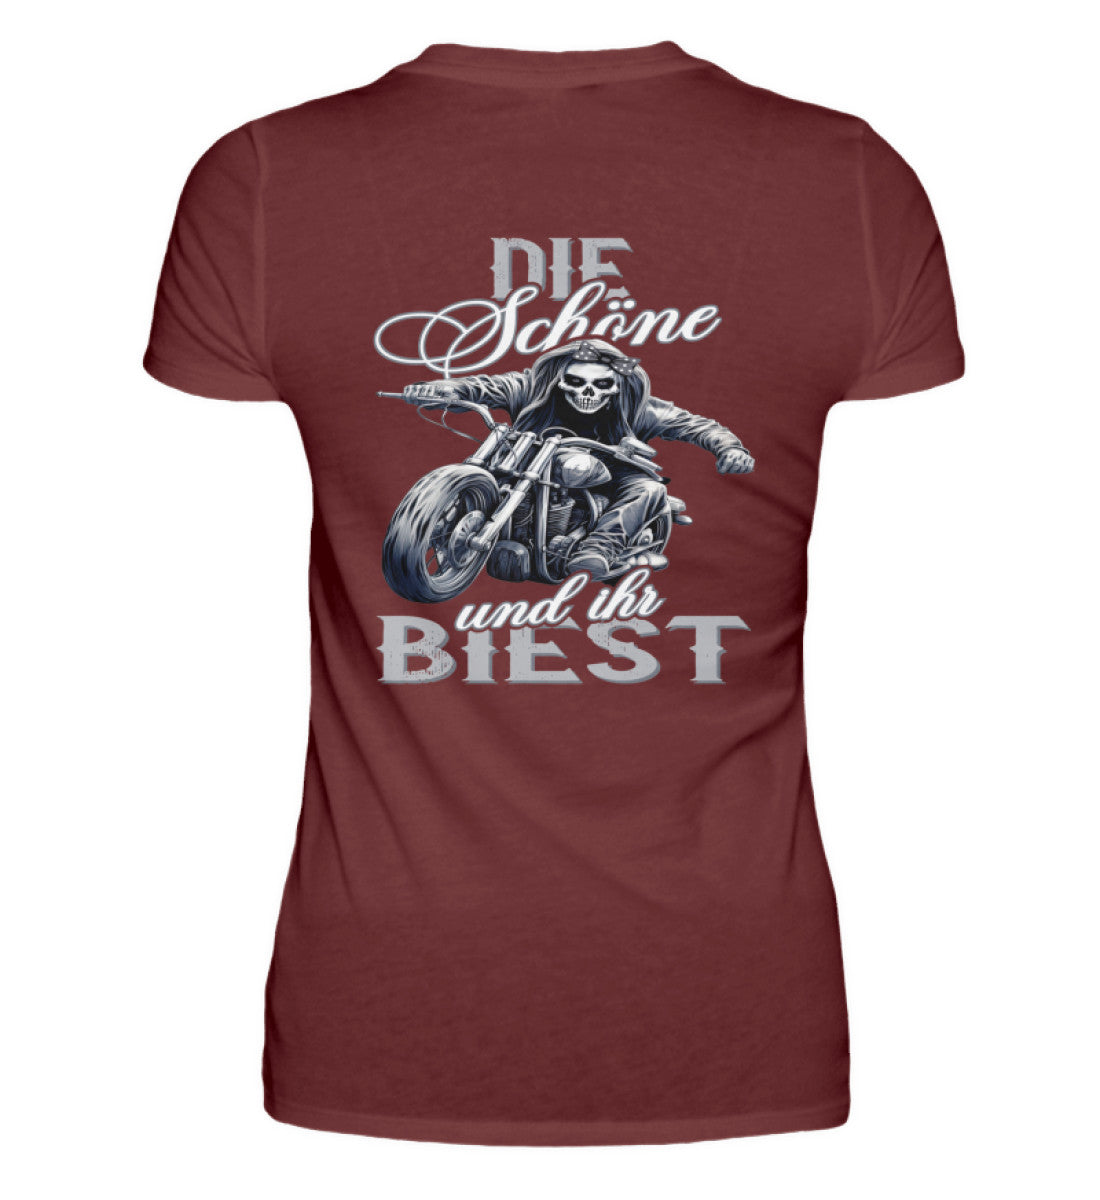 Ein Bikerin T-Shirt für Motorradfahrerinnen von Wingbikers mit dem Aufdruck, Die Schöne und ihr Biest - mit Back Print, in weinrot.